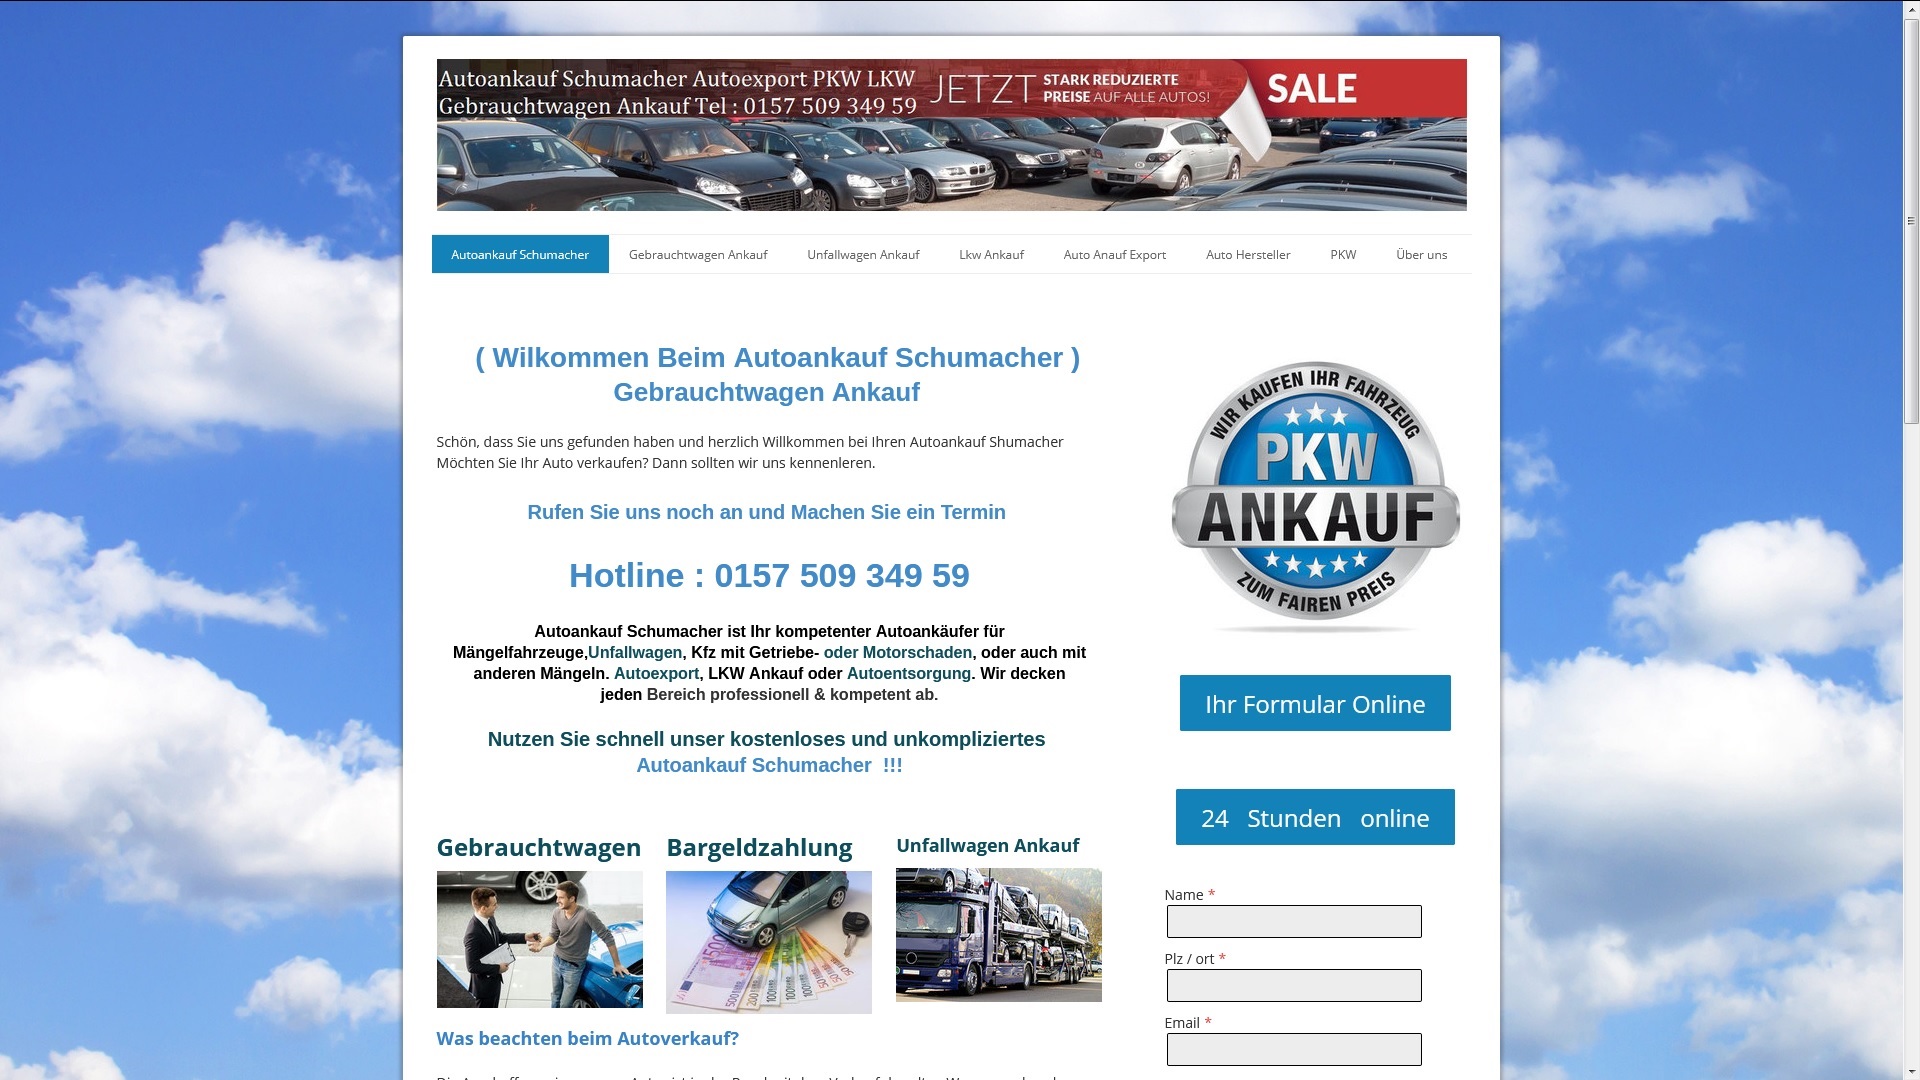 Extra Service bei Autoankauf in Friedrichshafen für ihr altes Fahrzeug